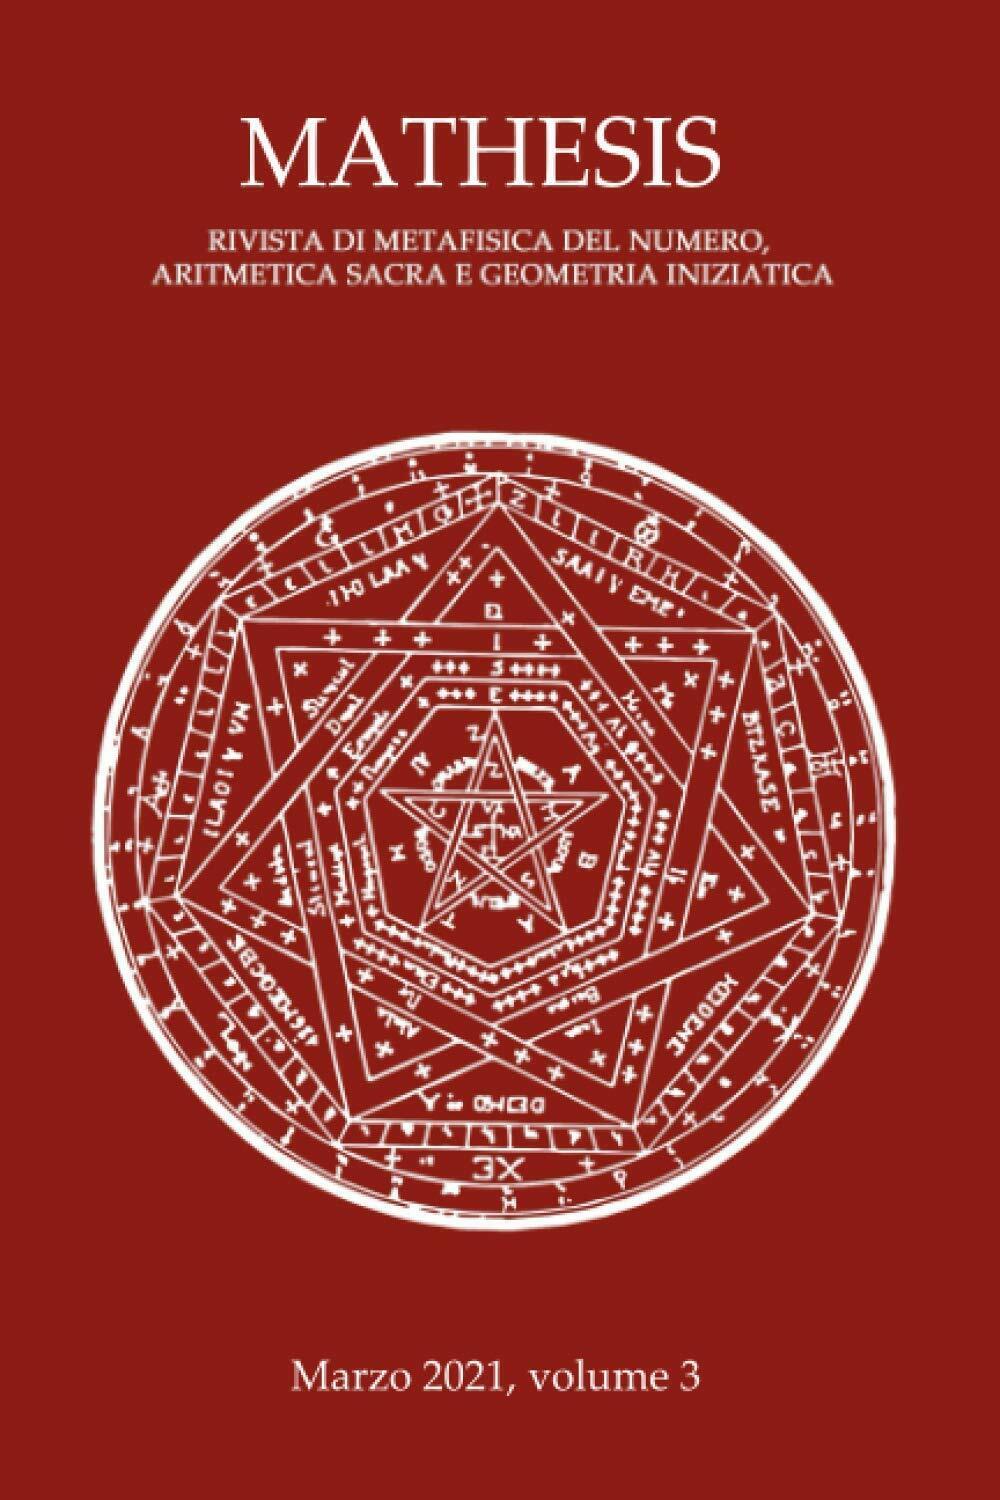 Mathesis volume 3: Rivista di metafisica del numero, aritmetica sacra e geometri